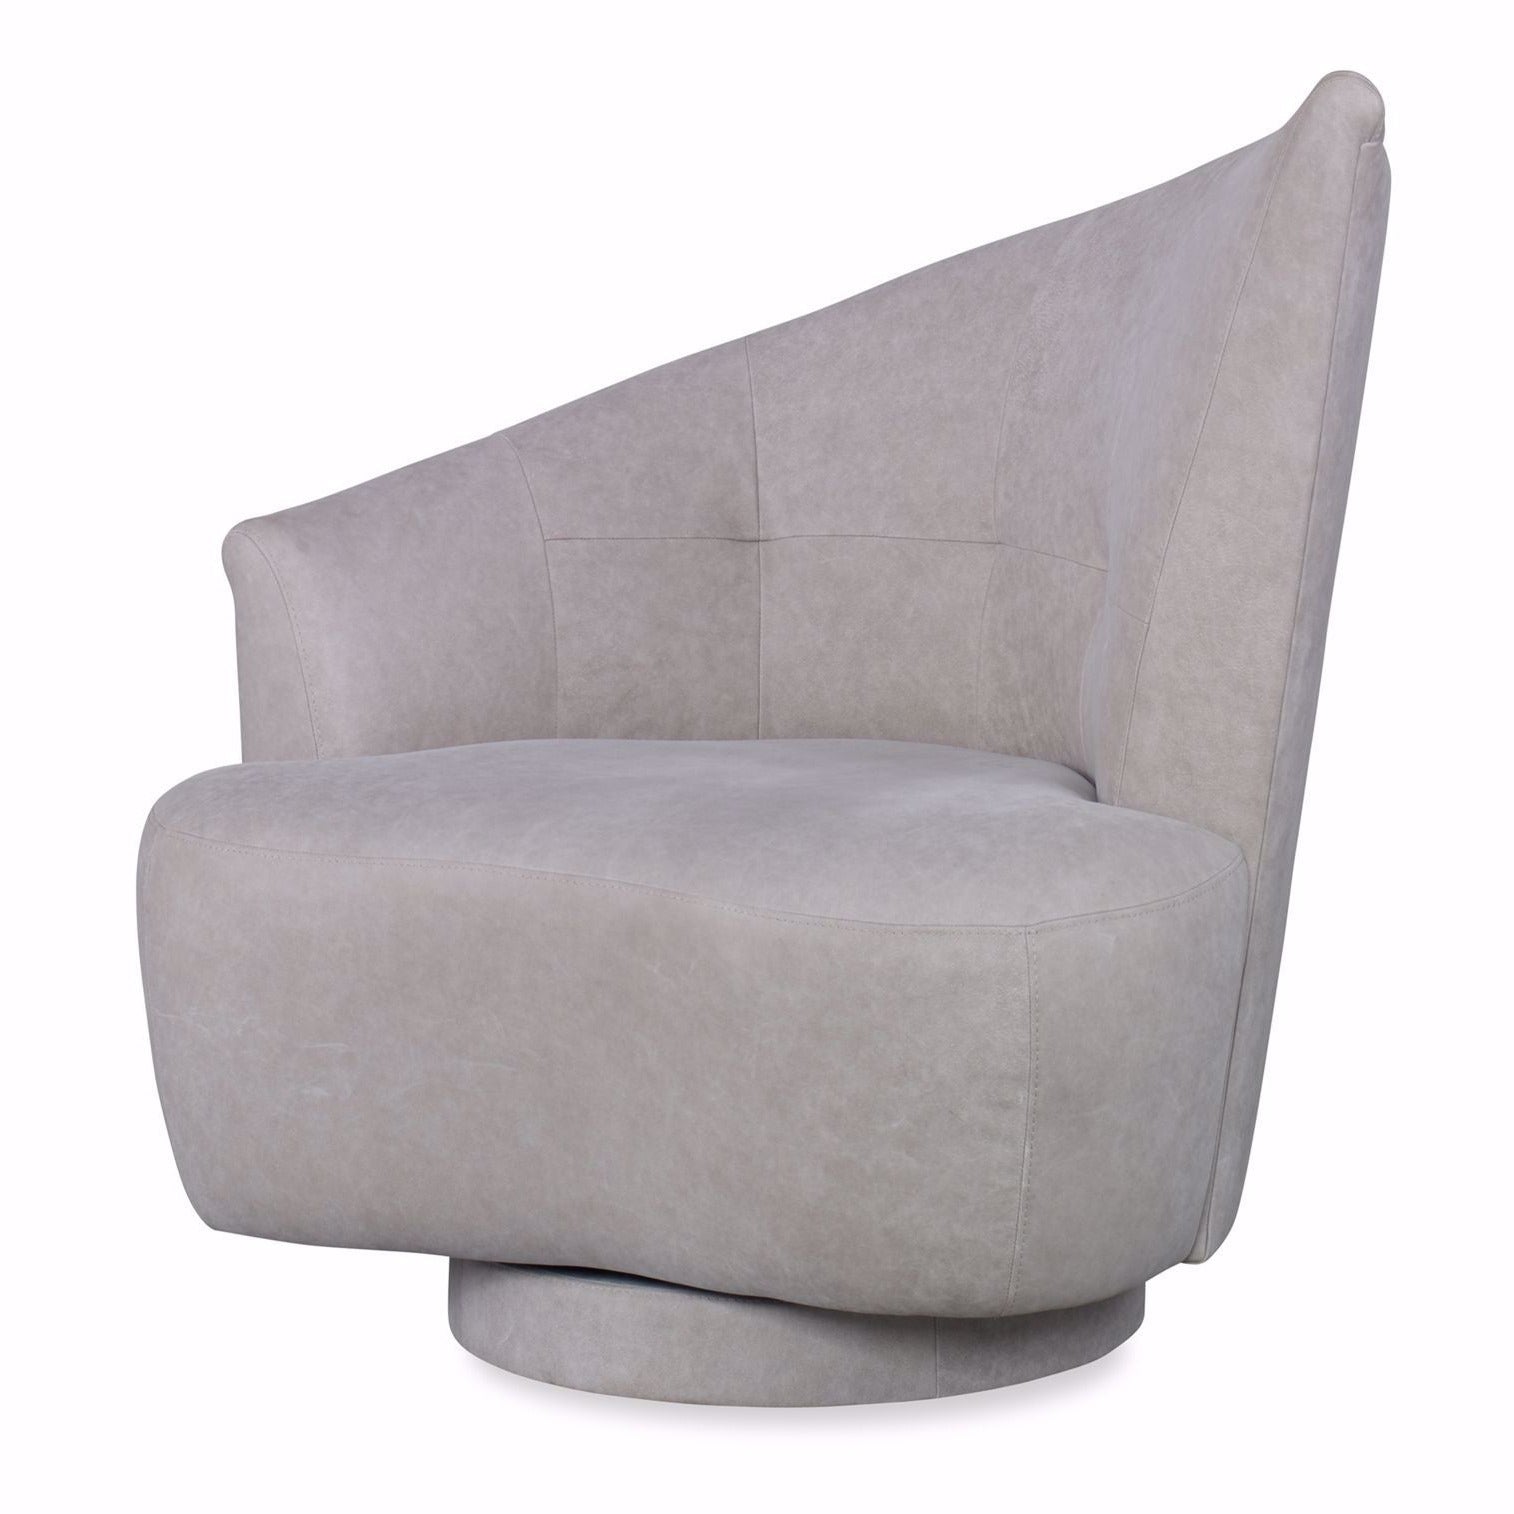 Lazar - Odyssey Accent Chair